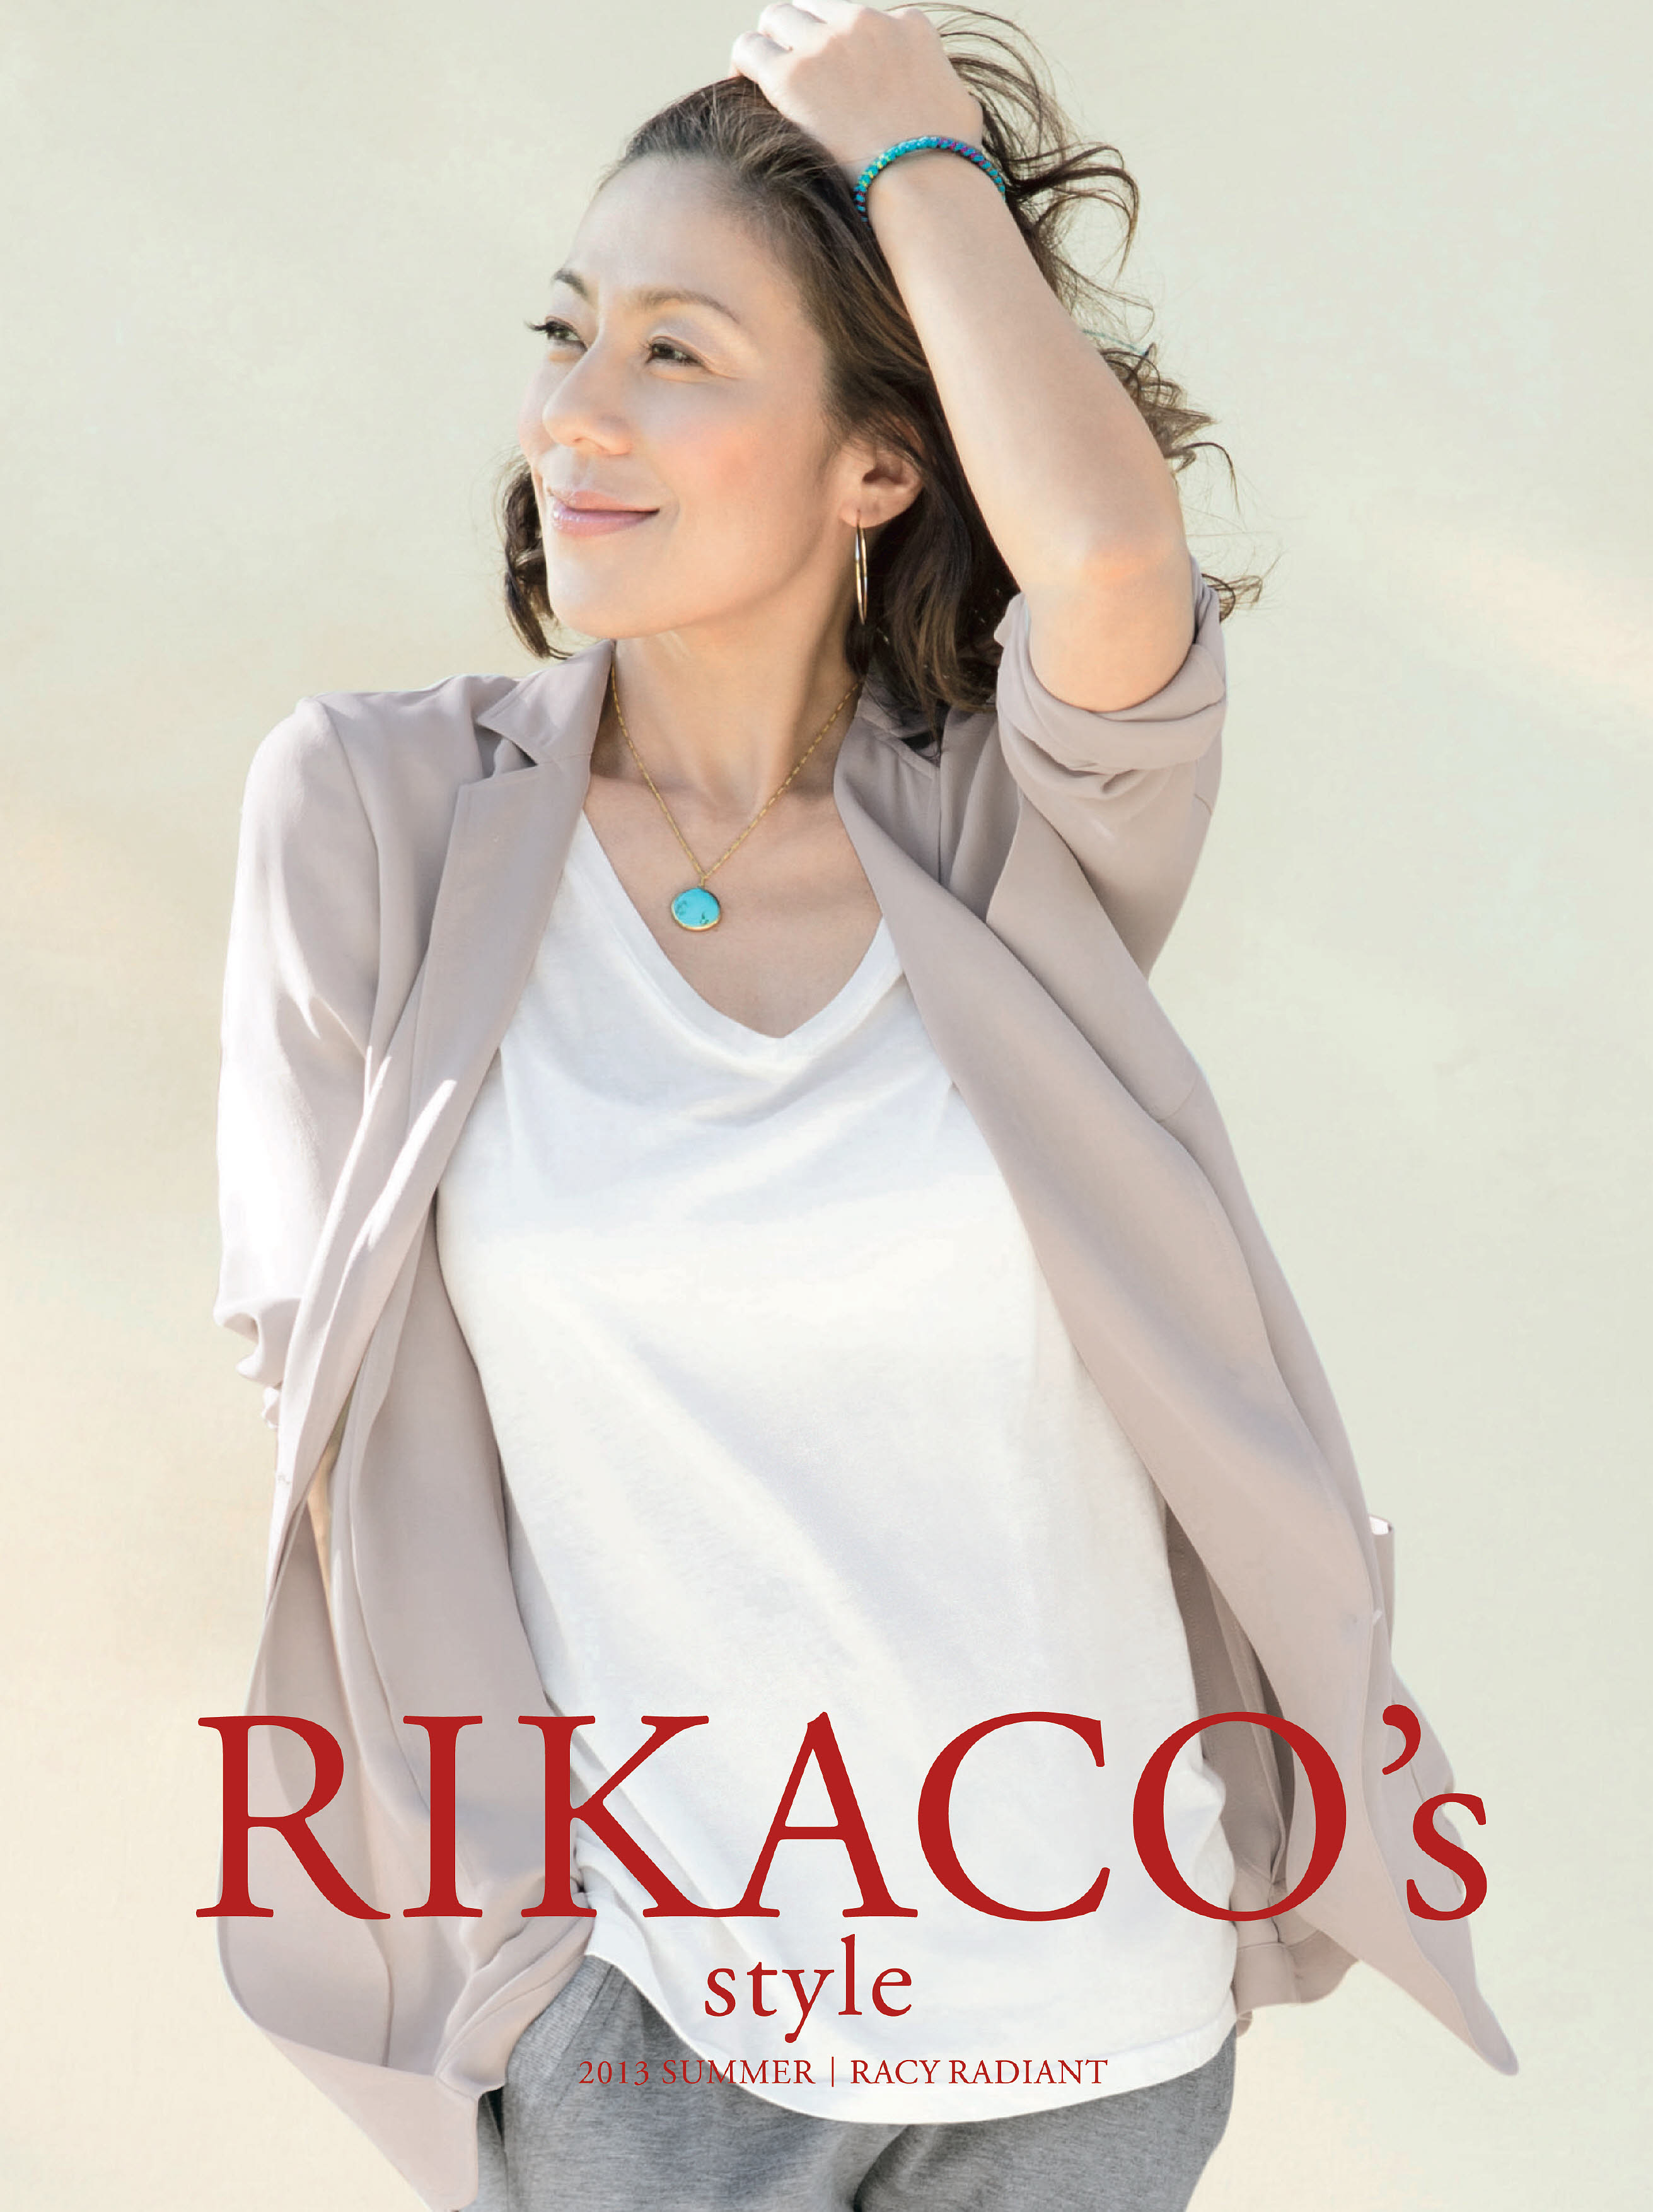 Rikacoプロデュースの13夏向けファッション 絶好調 等身大のrikacoの魅力とこだわりを形にした大人のためのカジュアル 株式会社 Dinos Corporationのプレスリリース